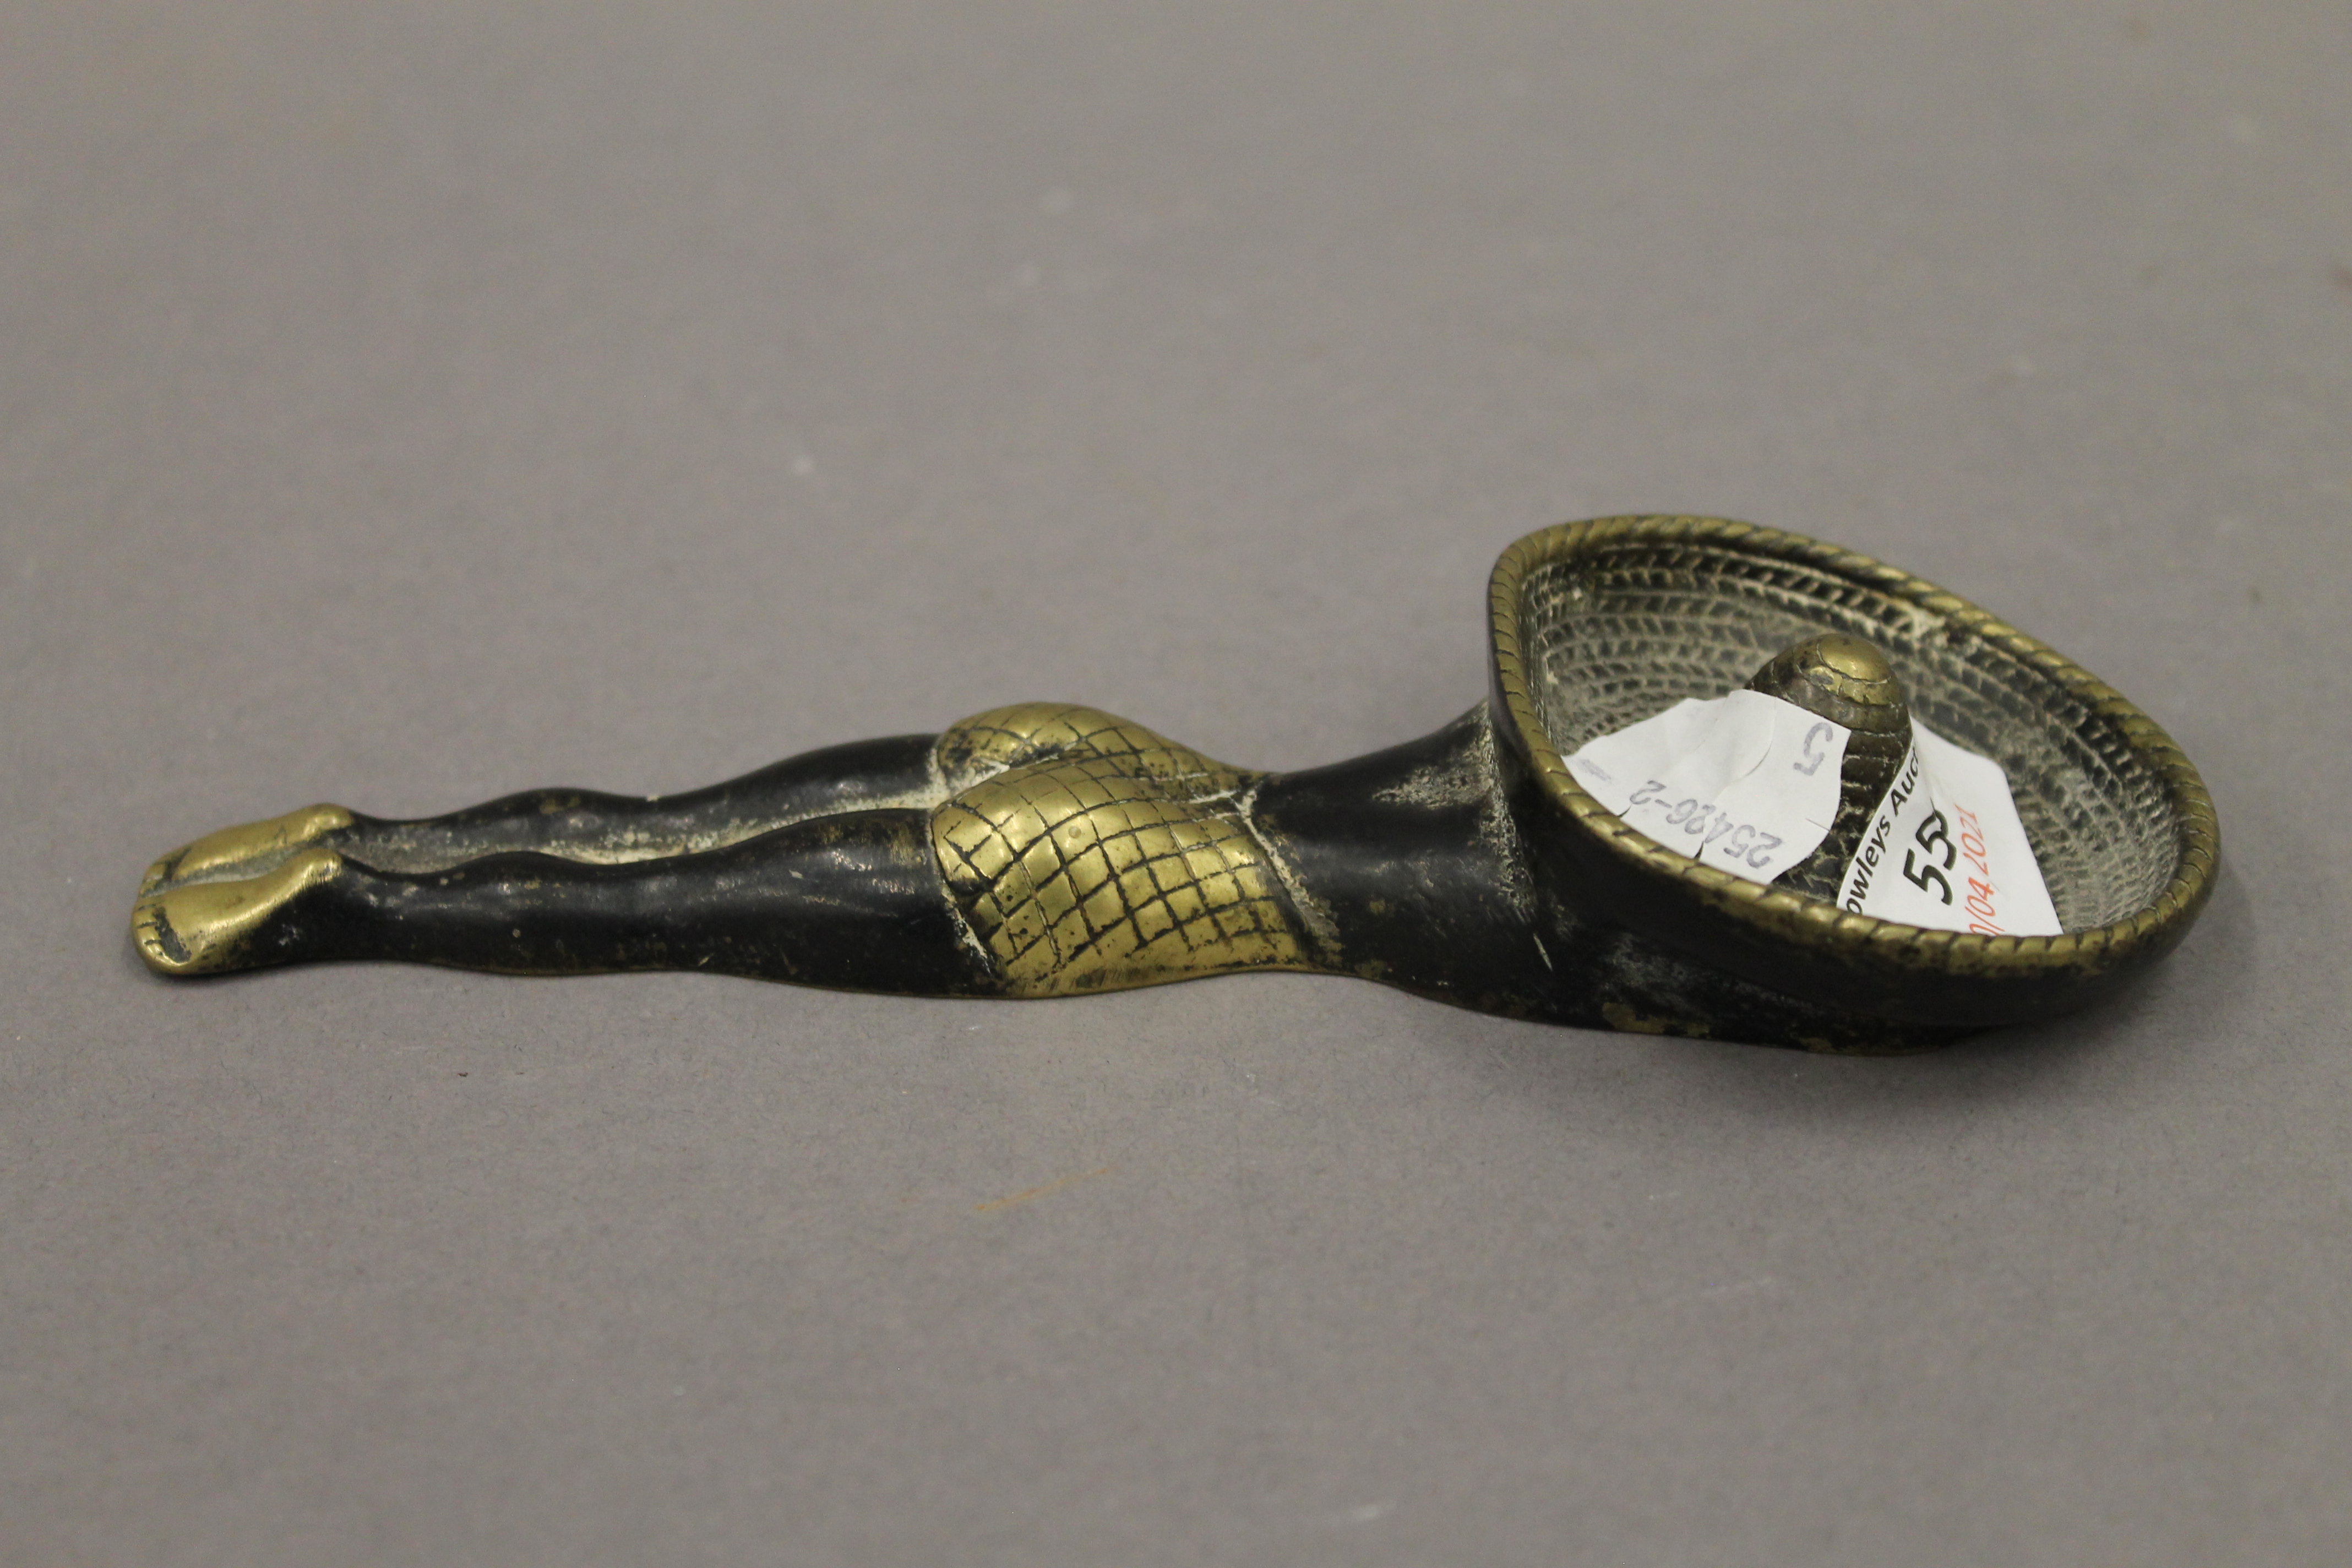 A brass novelty ashtray. 17.5 cm long.